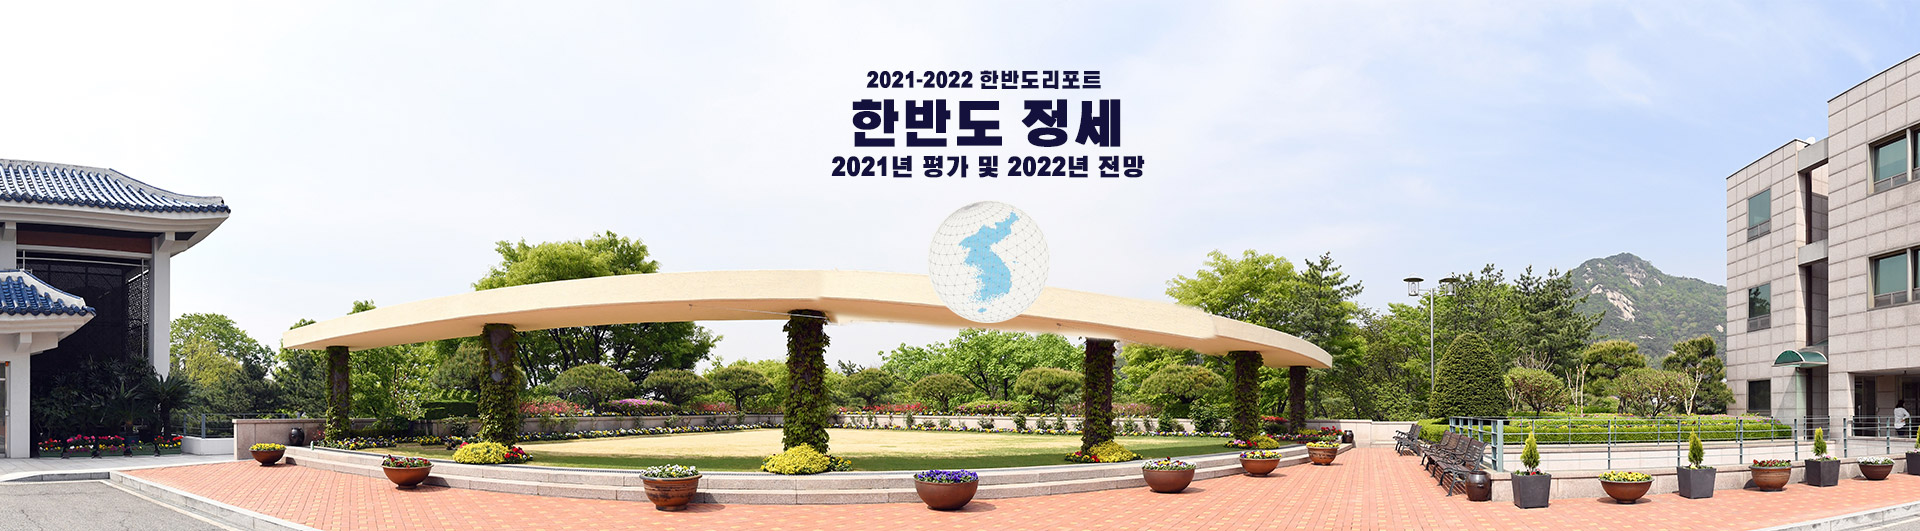 2021-2022 정세전망